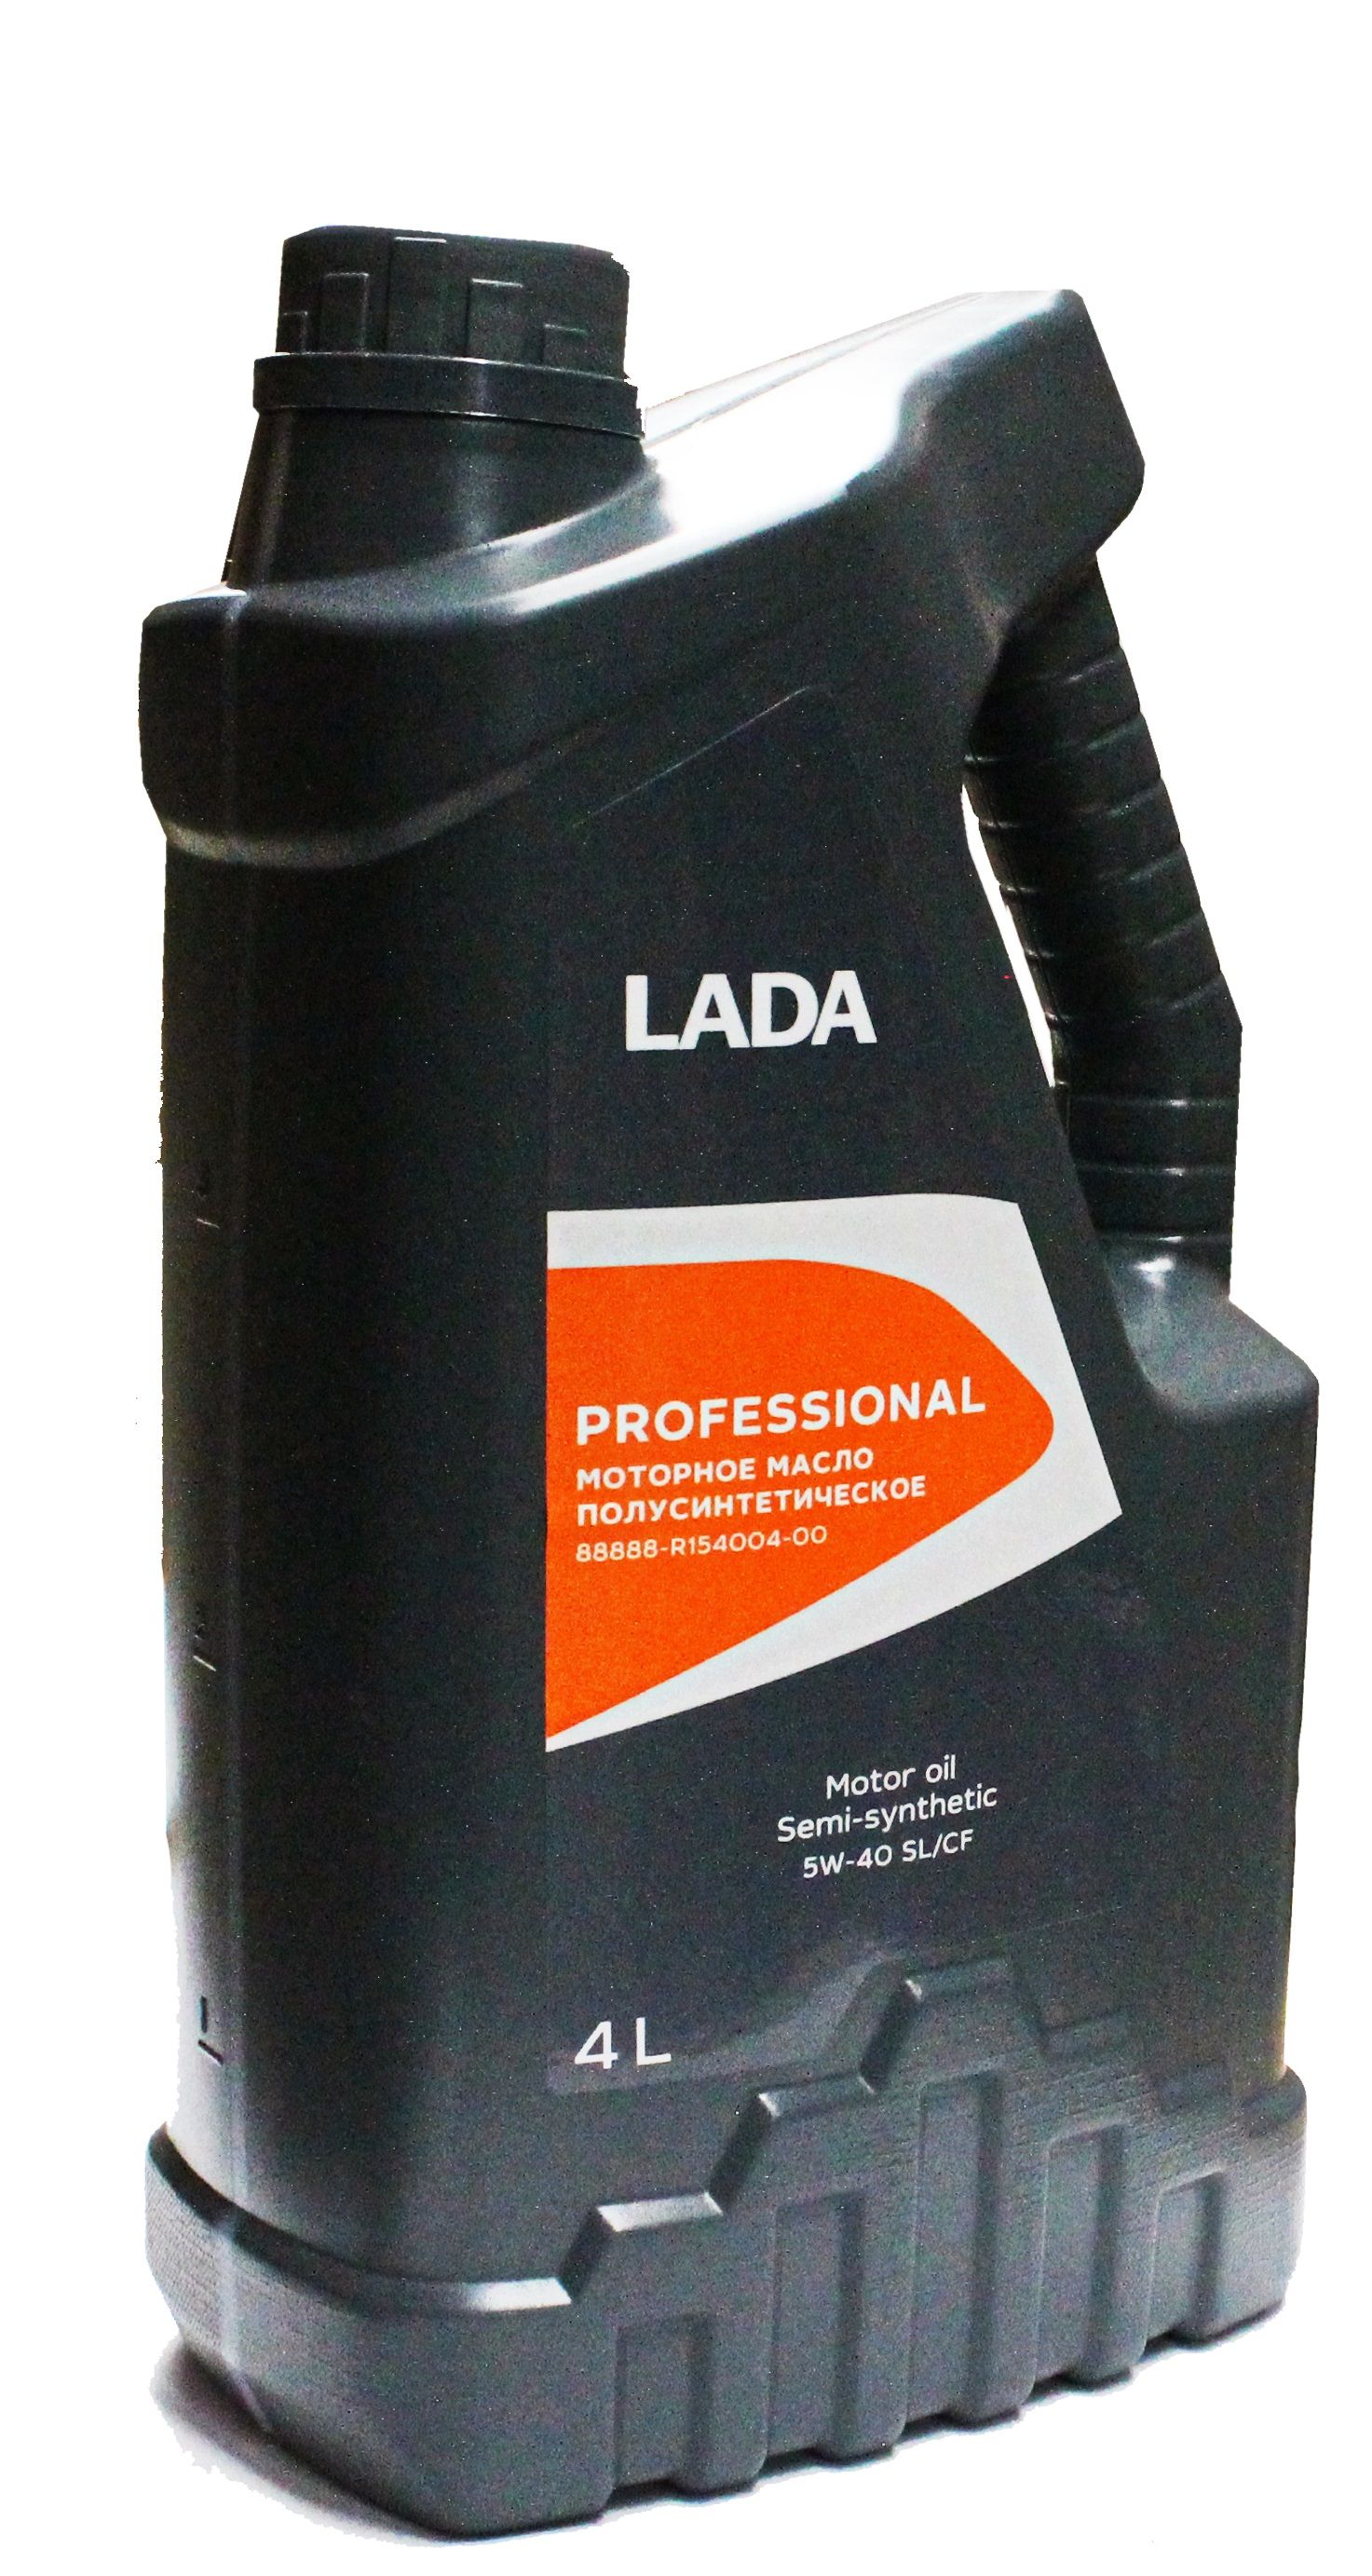 фото Lada моторное масло lada professional 5w40 полусинтетическое 1 л 88888r15400100